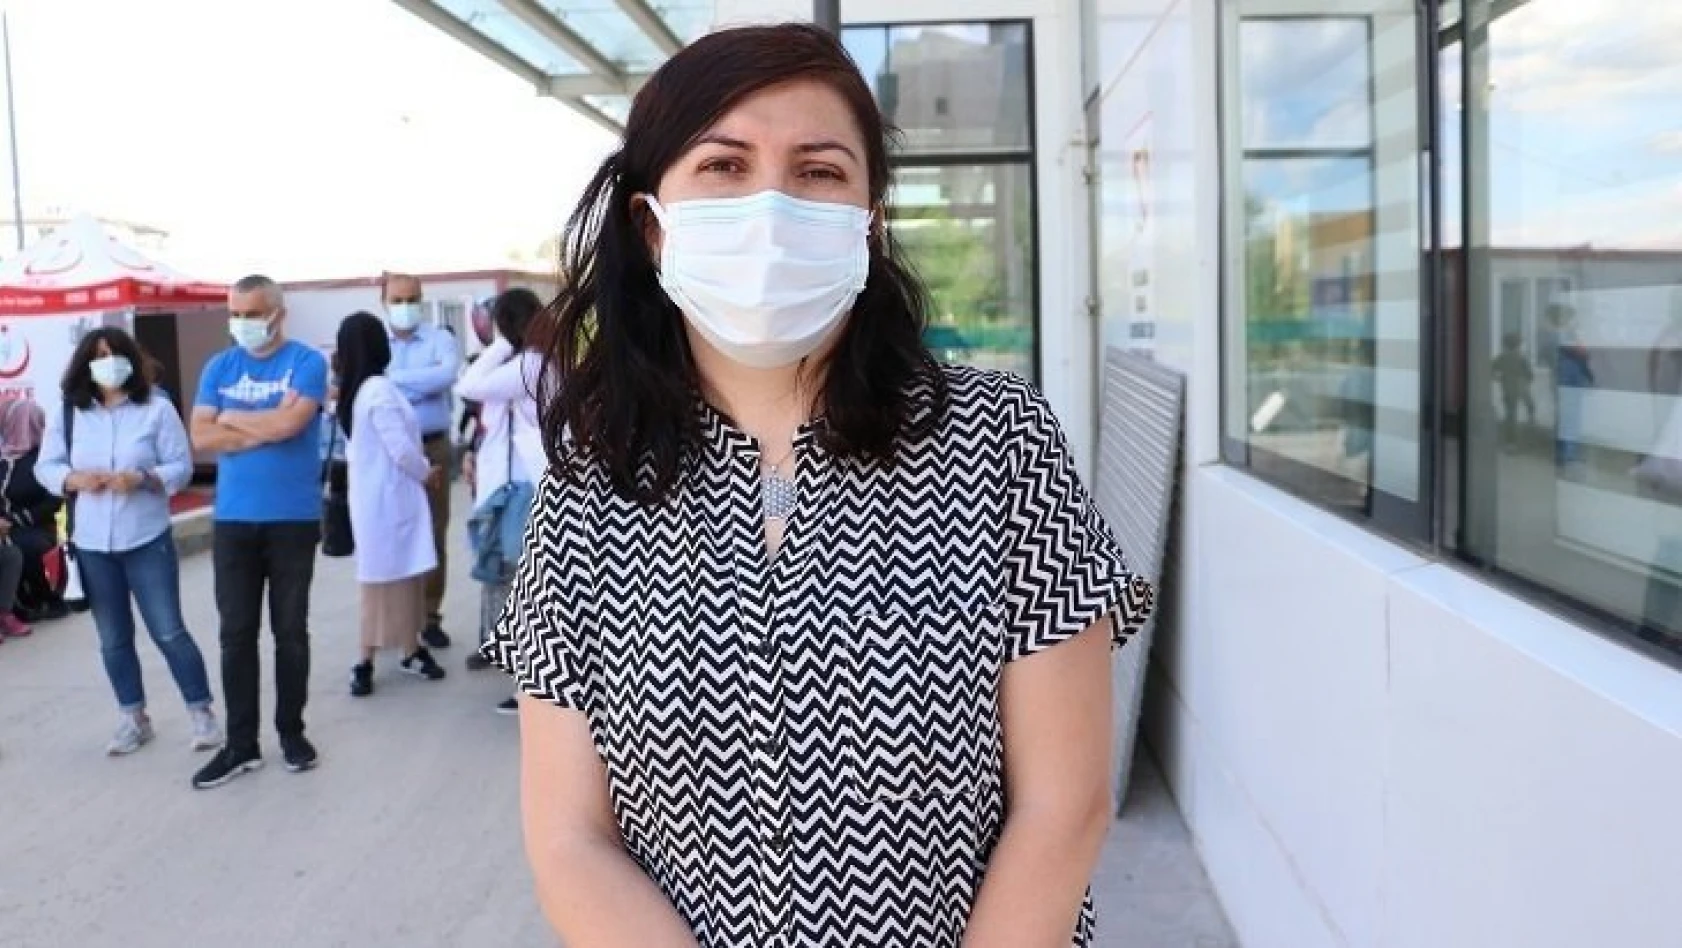 Kastamonu'da kadın doktora yönelik şiddet kınandı